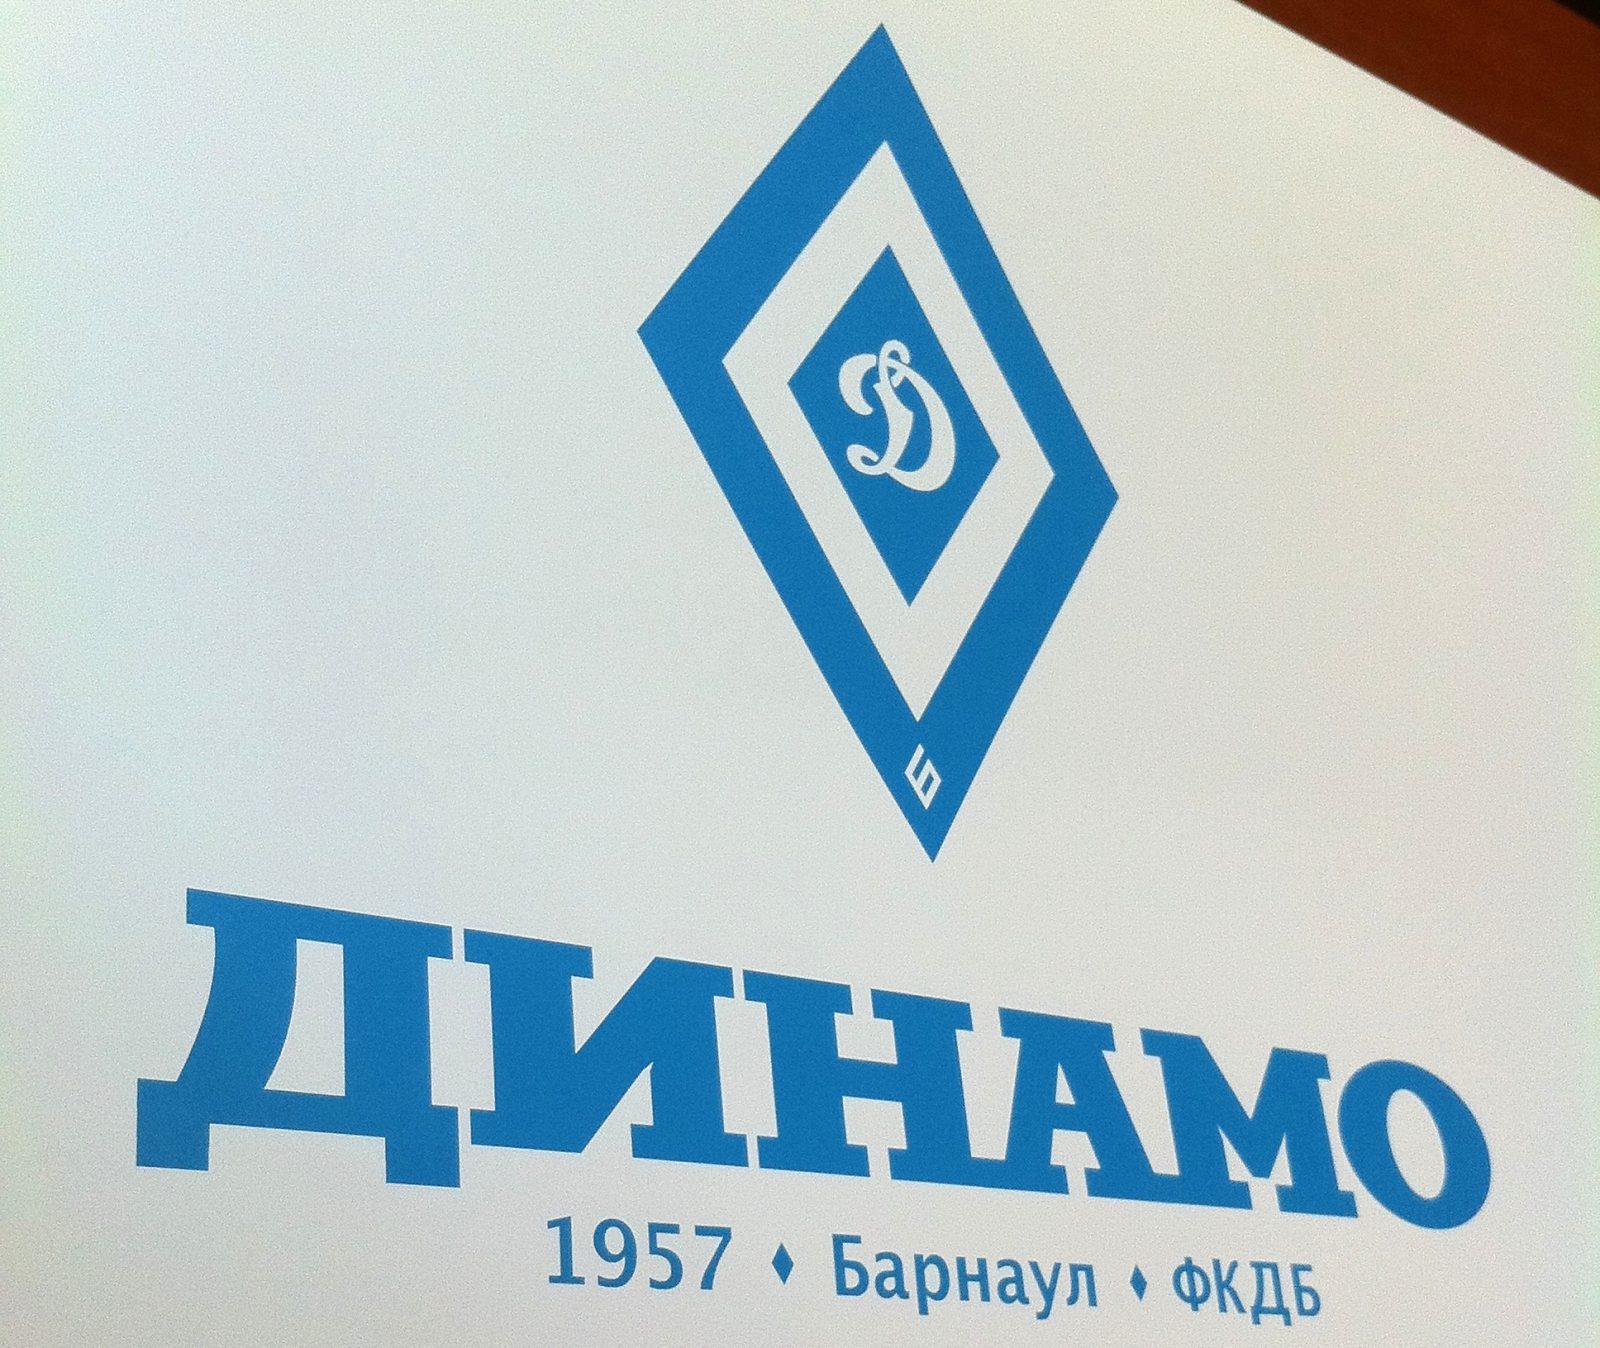 Ромбы, волки и команда: футбольное «Динамо» презентовало новую эмблему и фирменный стиль